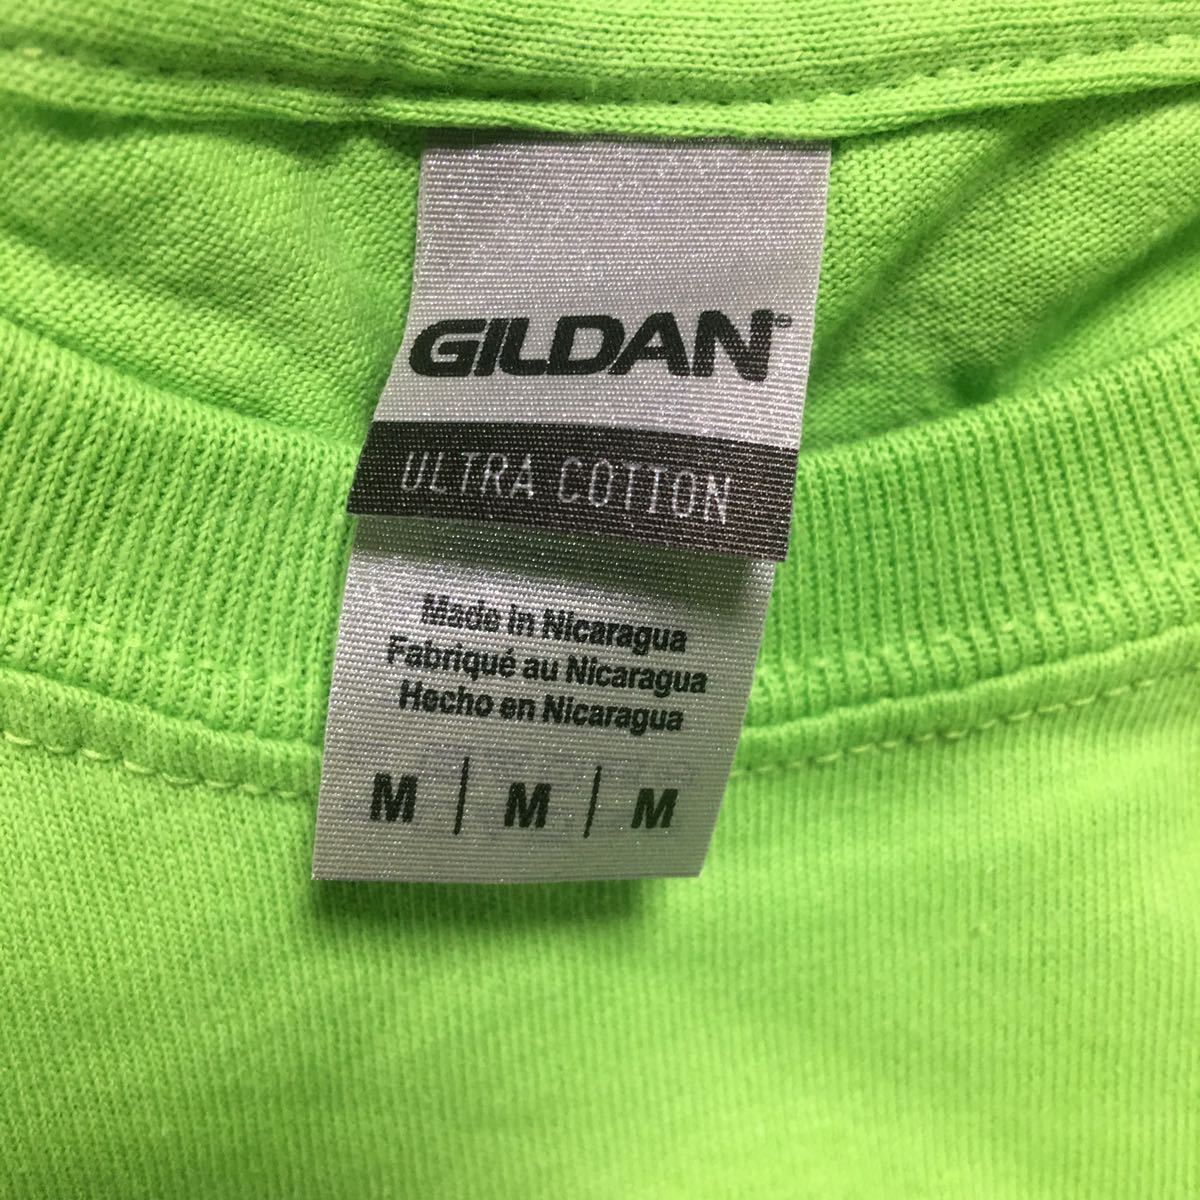 GILDAN ライム M サイズ 黄緑 ライムグリーン 半袖無地Tシャツ ポケット無し 6.0oz ギルダン☆_画像2